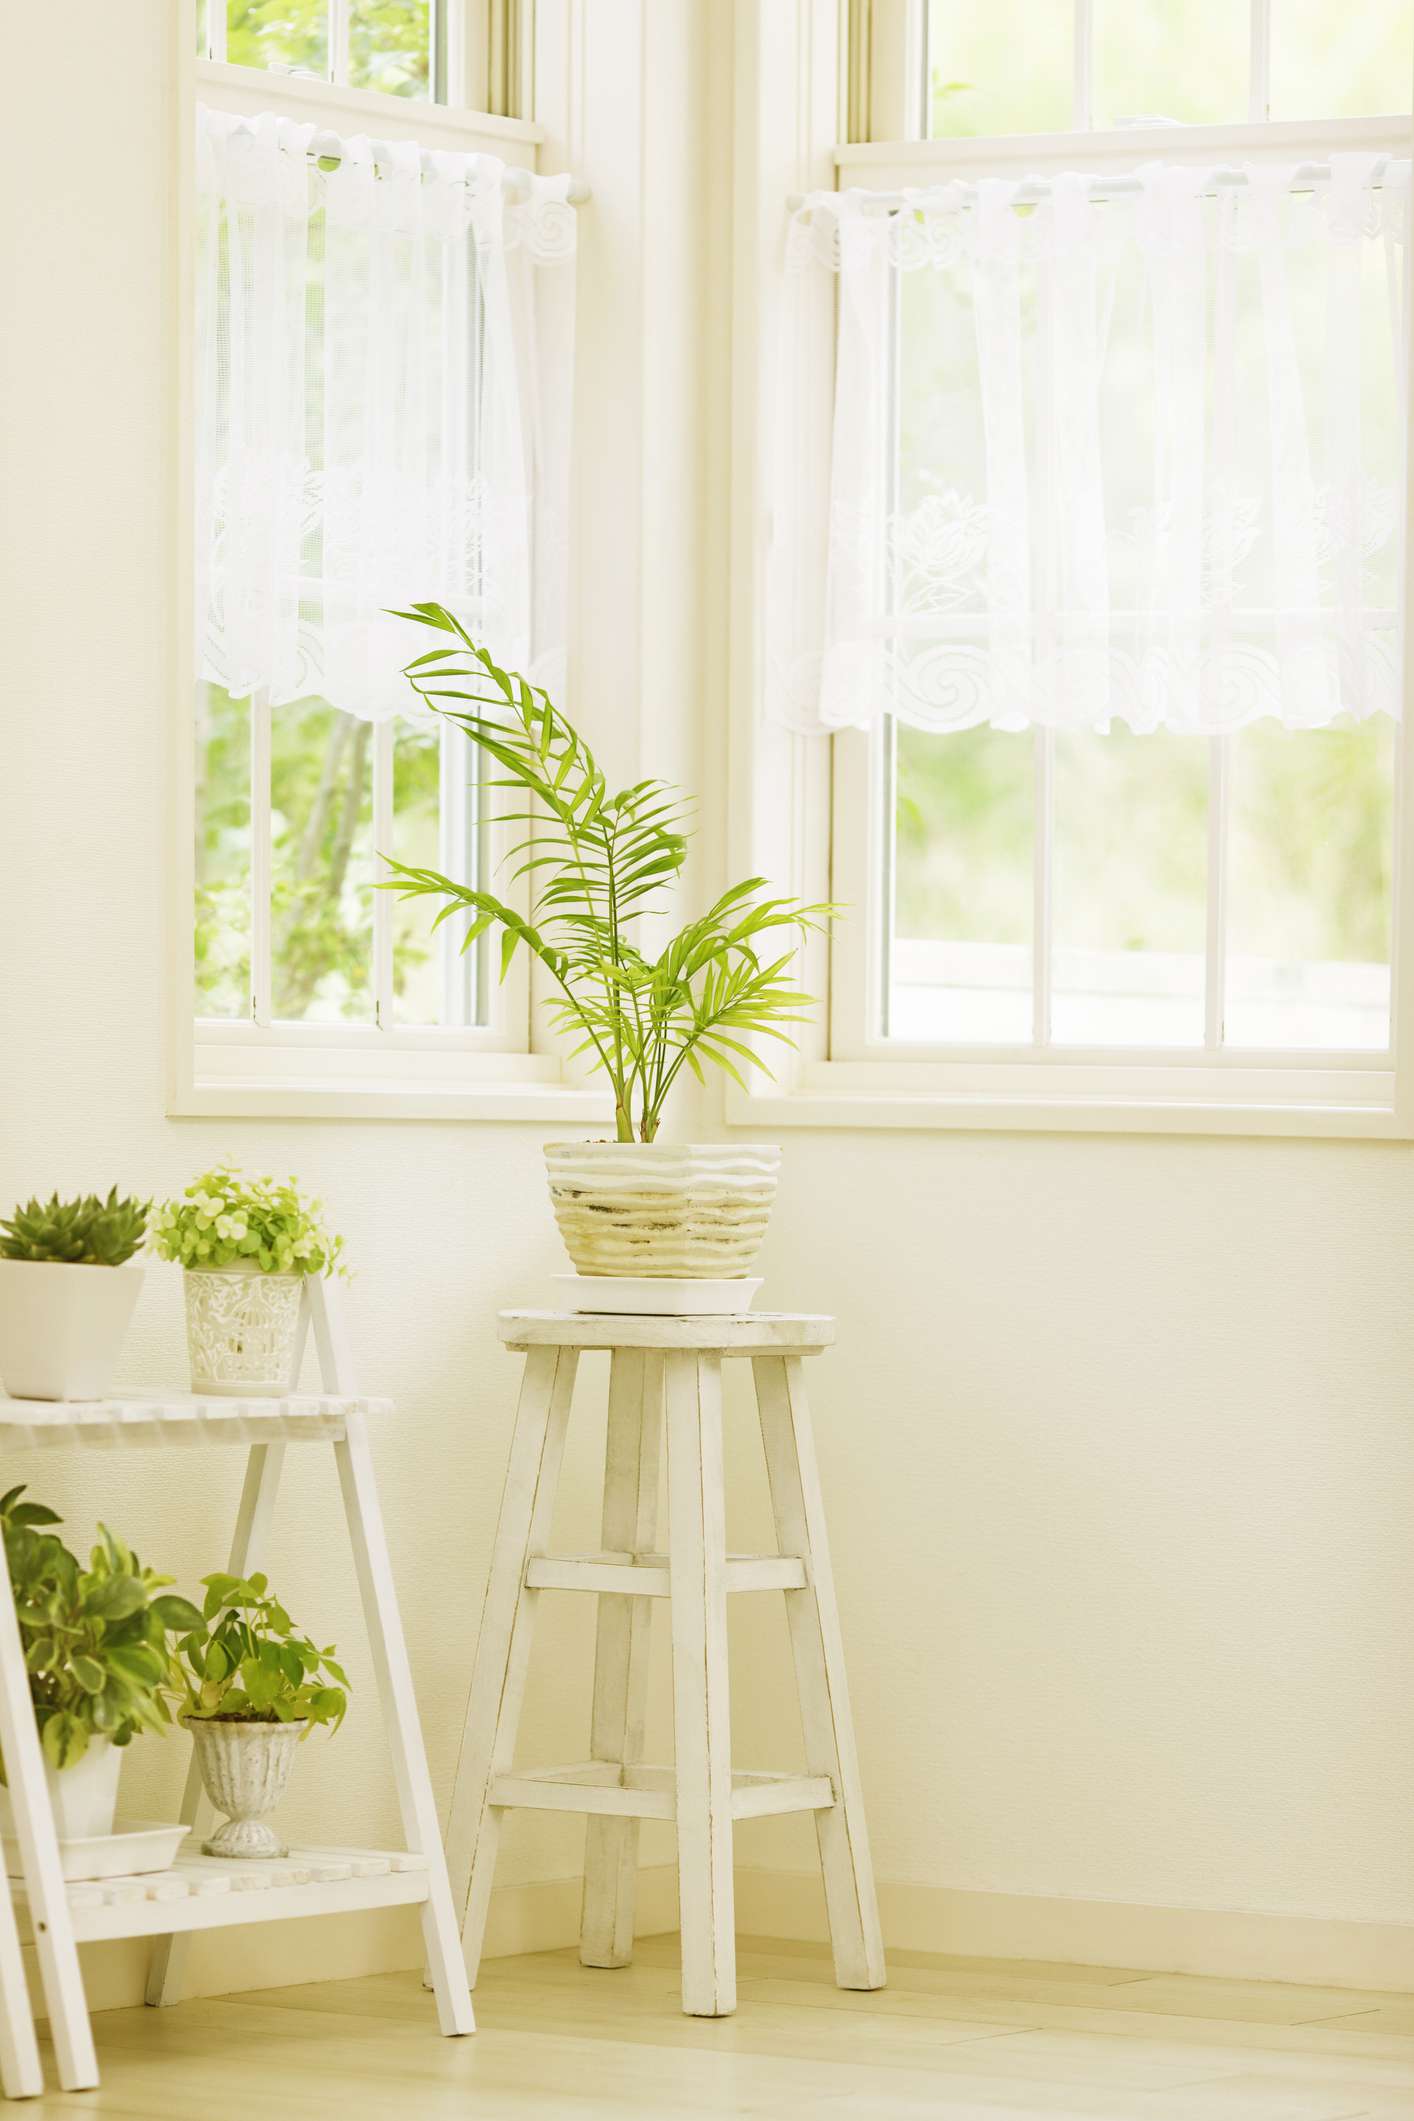 Fenêtre avec des tiges de tension tenant des rideaux de dentelle blanche et des plantes sur des supports blancs devant les fenêtres